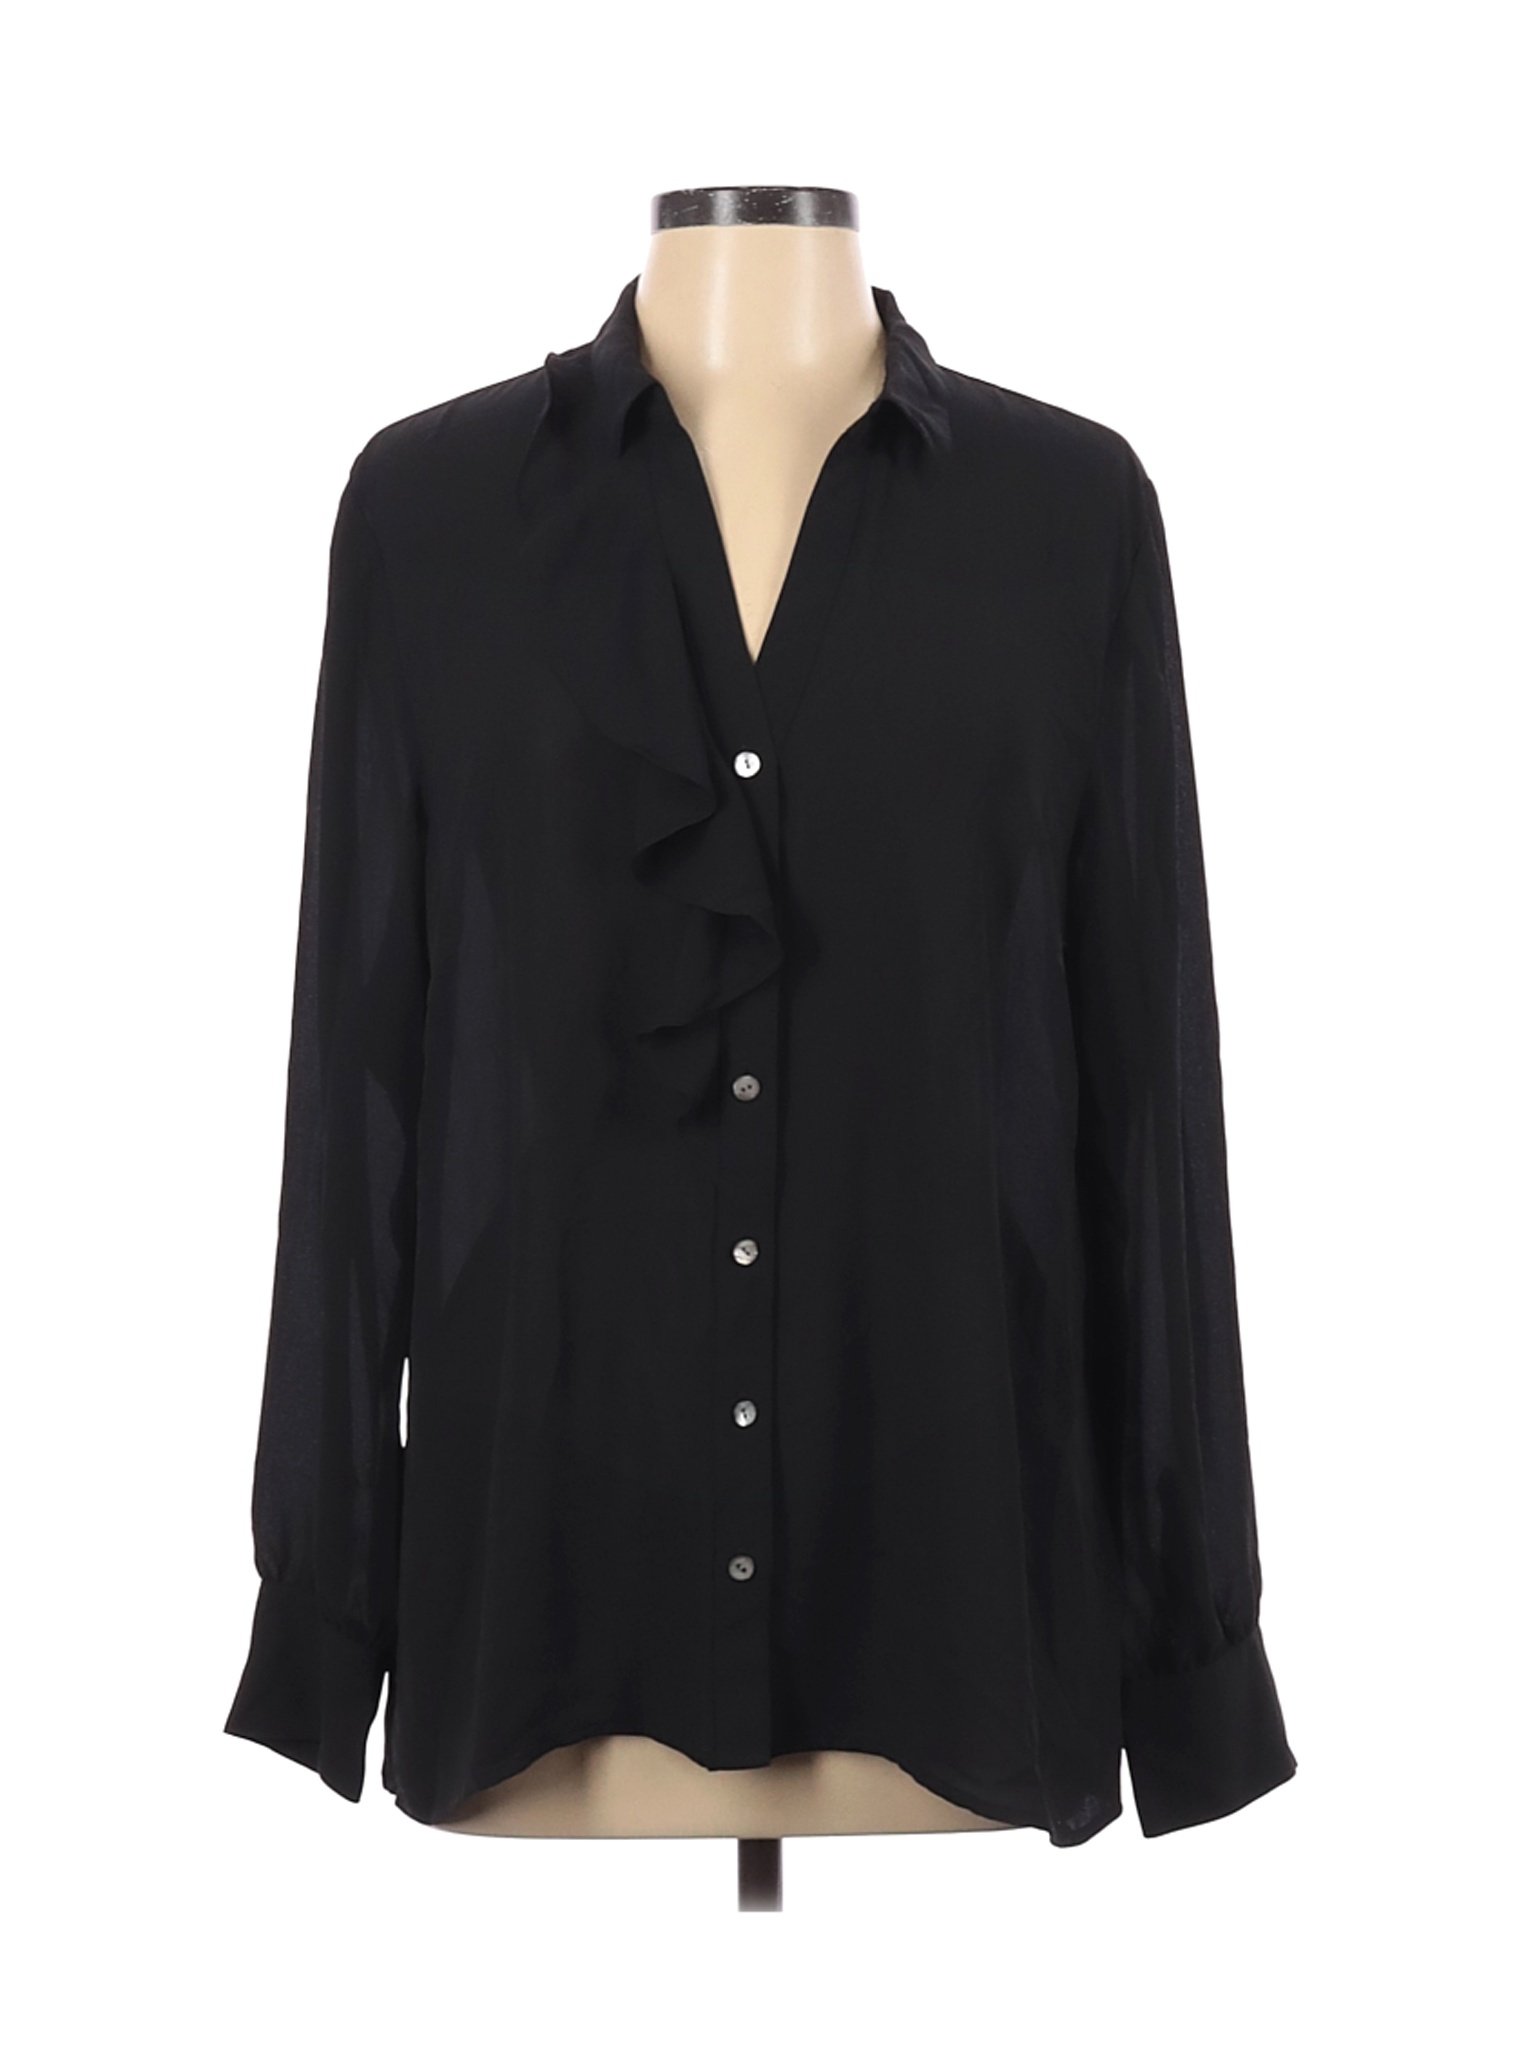 J.Jill Women Black Long Sleeve Blouse L | eBay